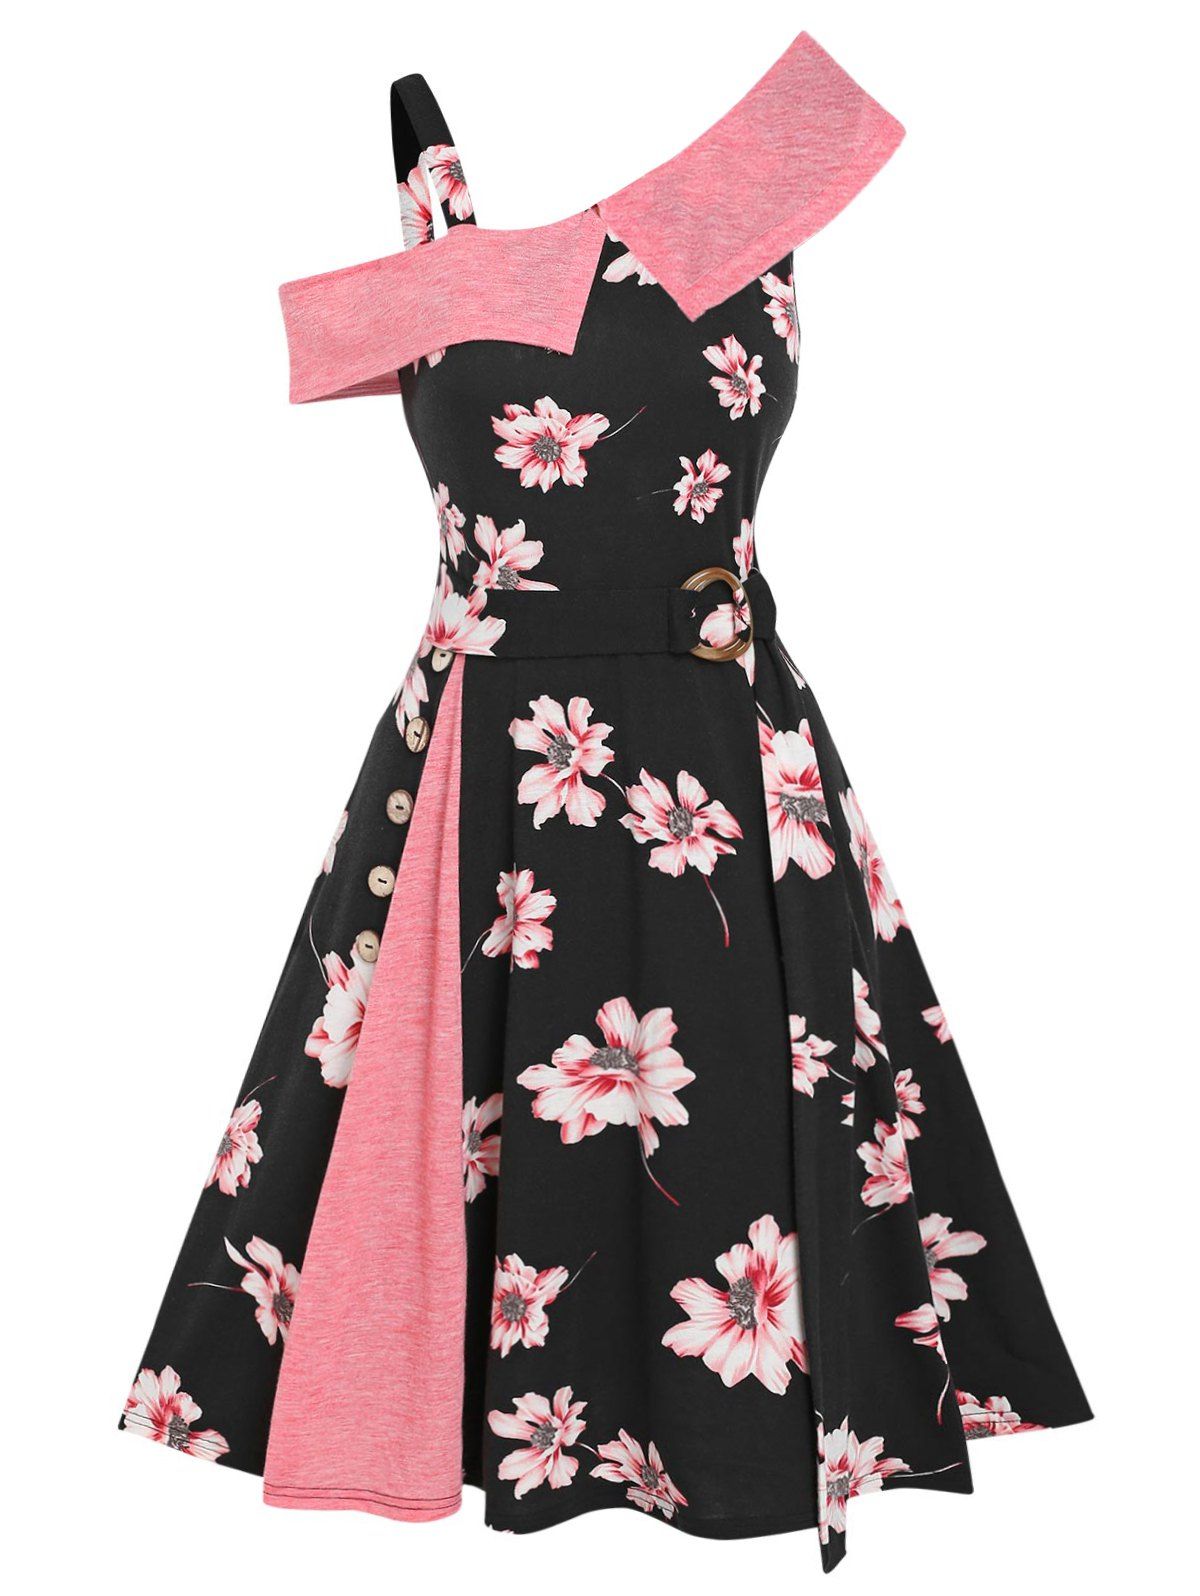 Floral Skew Collar Cold Shoulder A Line Godet Dress - multicolor XL